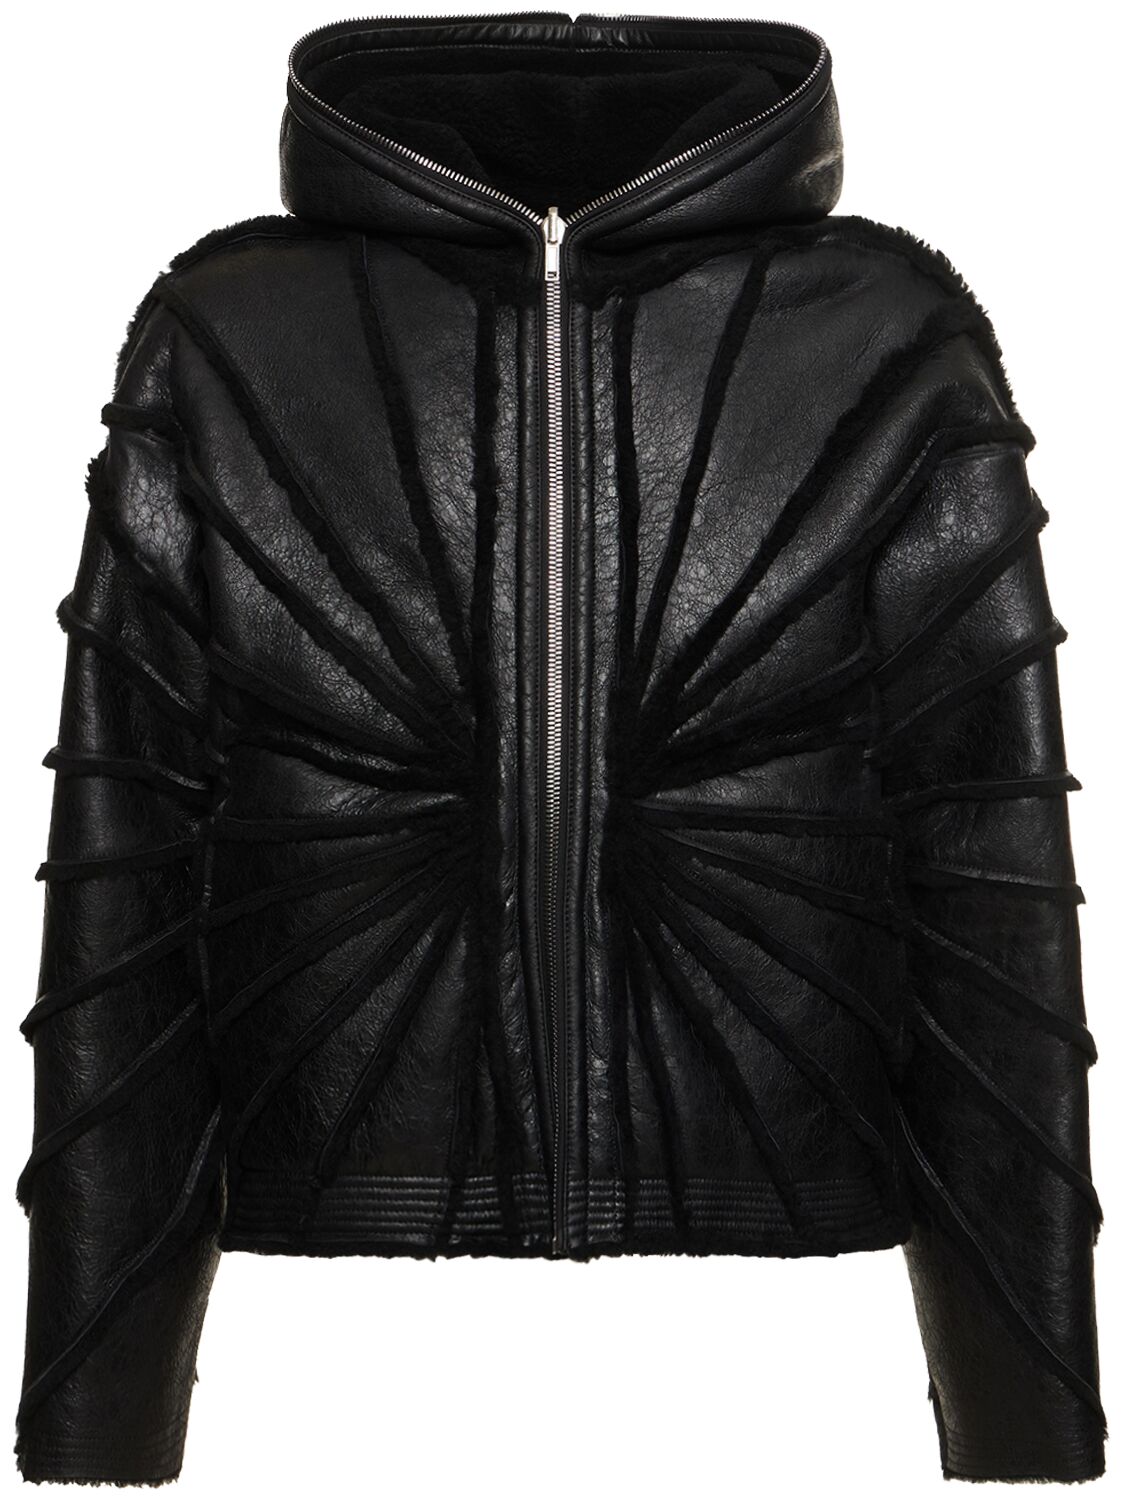 Image of Hooded Sealed Leather Jacket